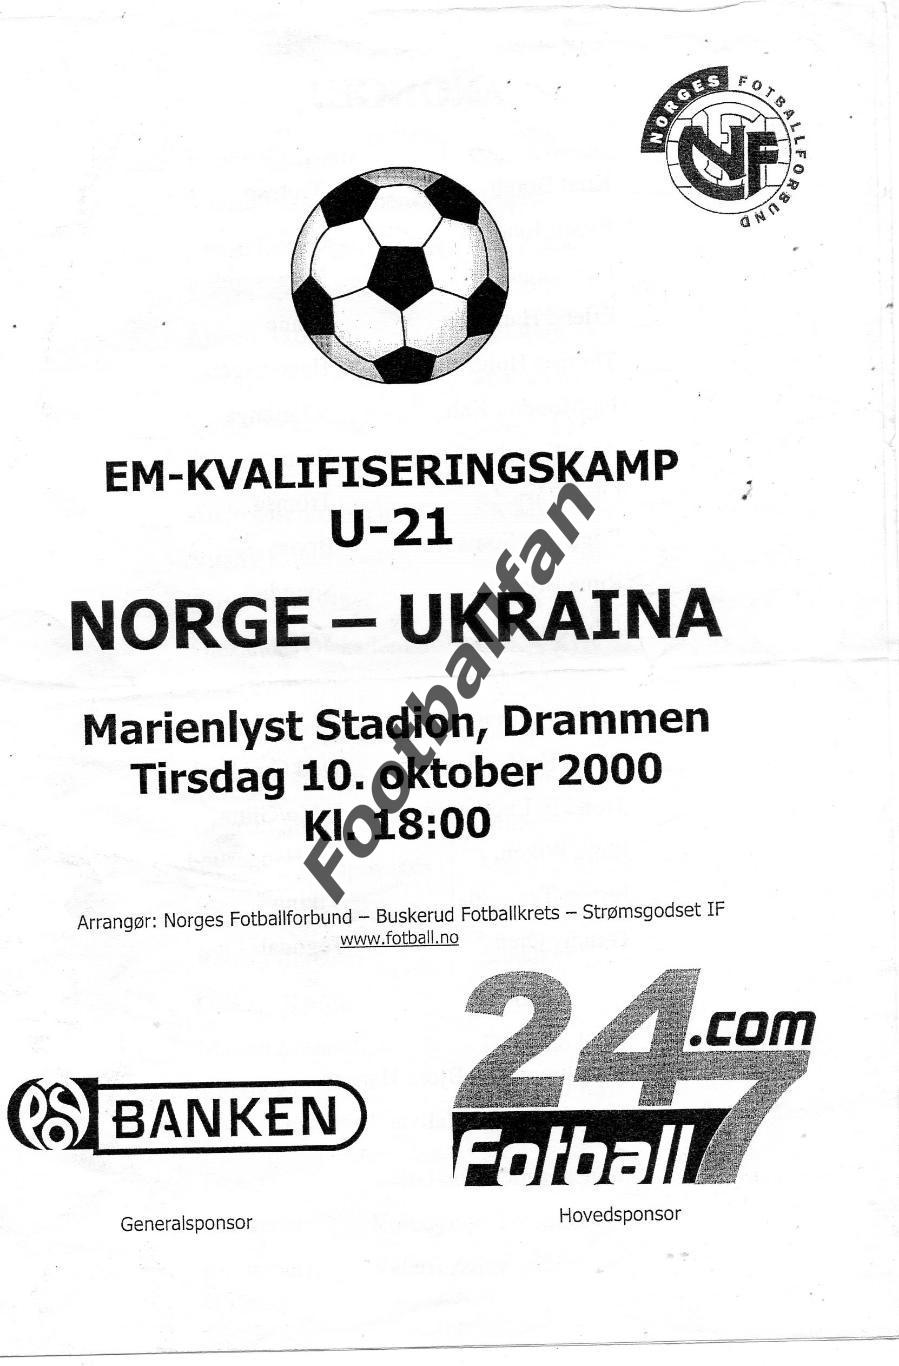 АКЦИЯ до 01.06 Норвегия - Украина U - 21 10.10.2000